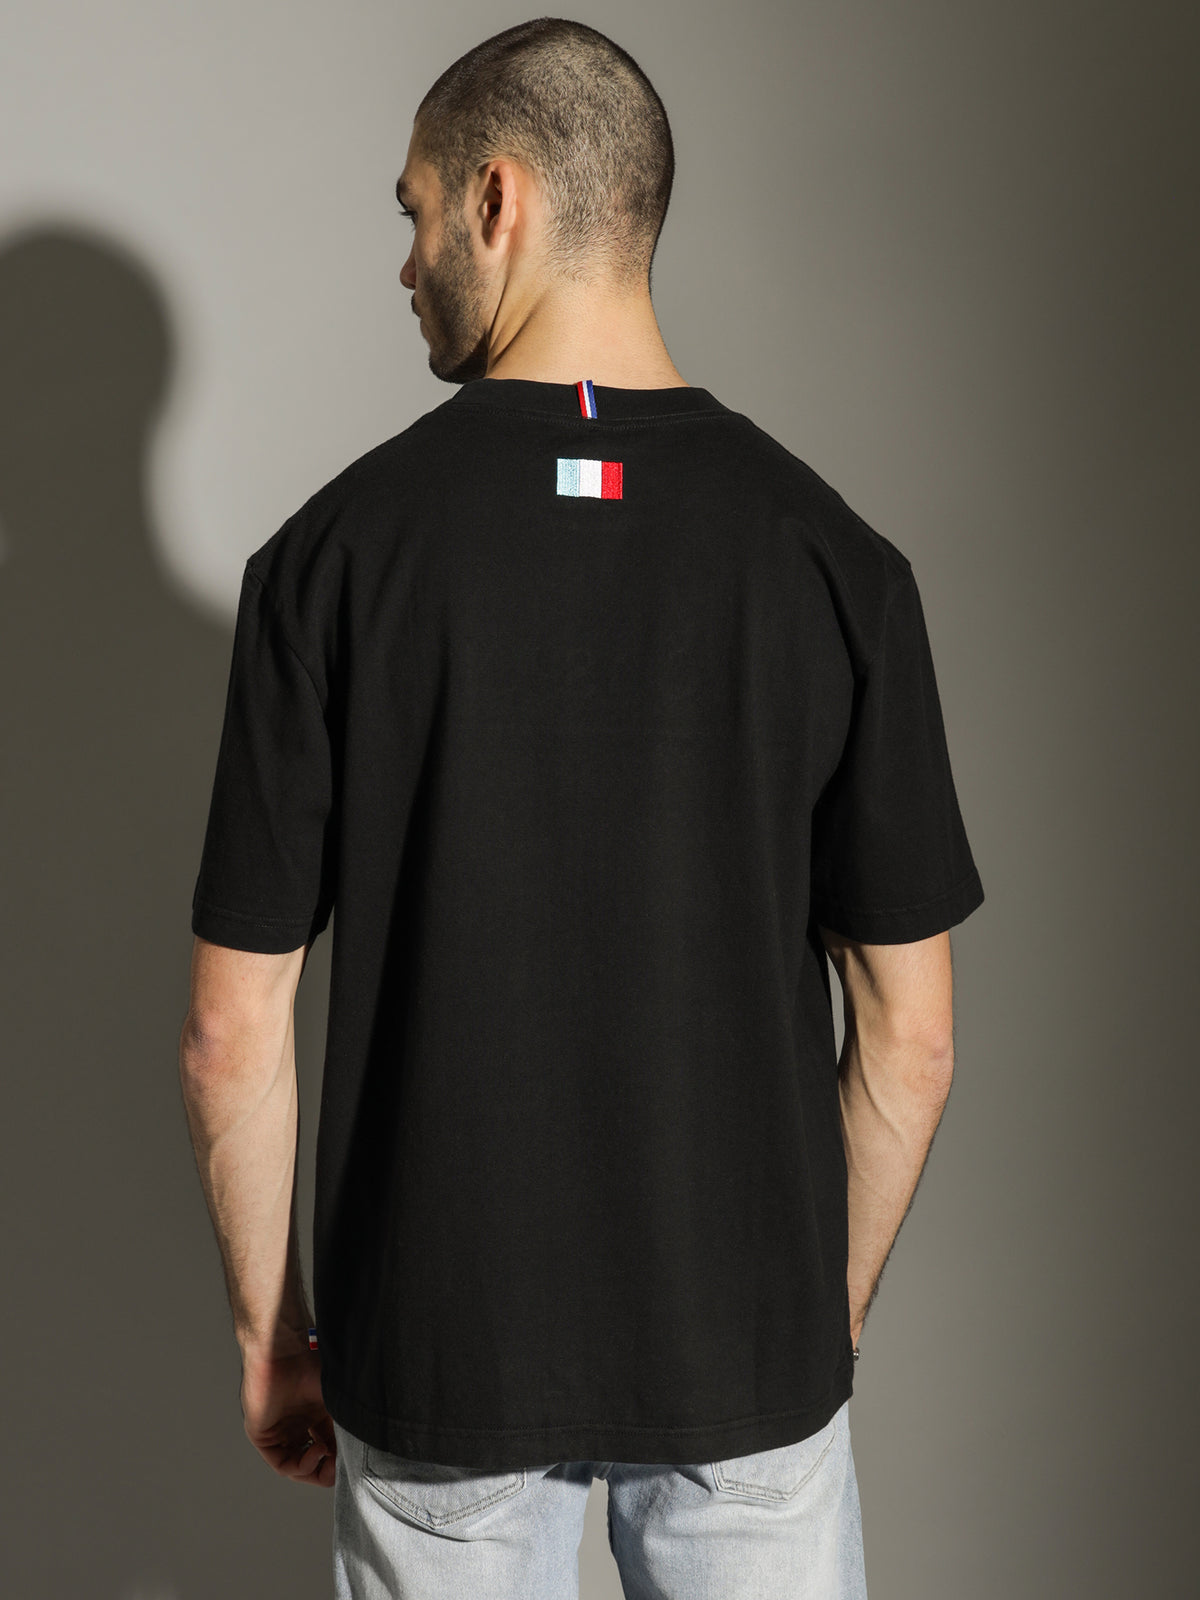 Parisien Collegiate T-Shirt in Black